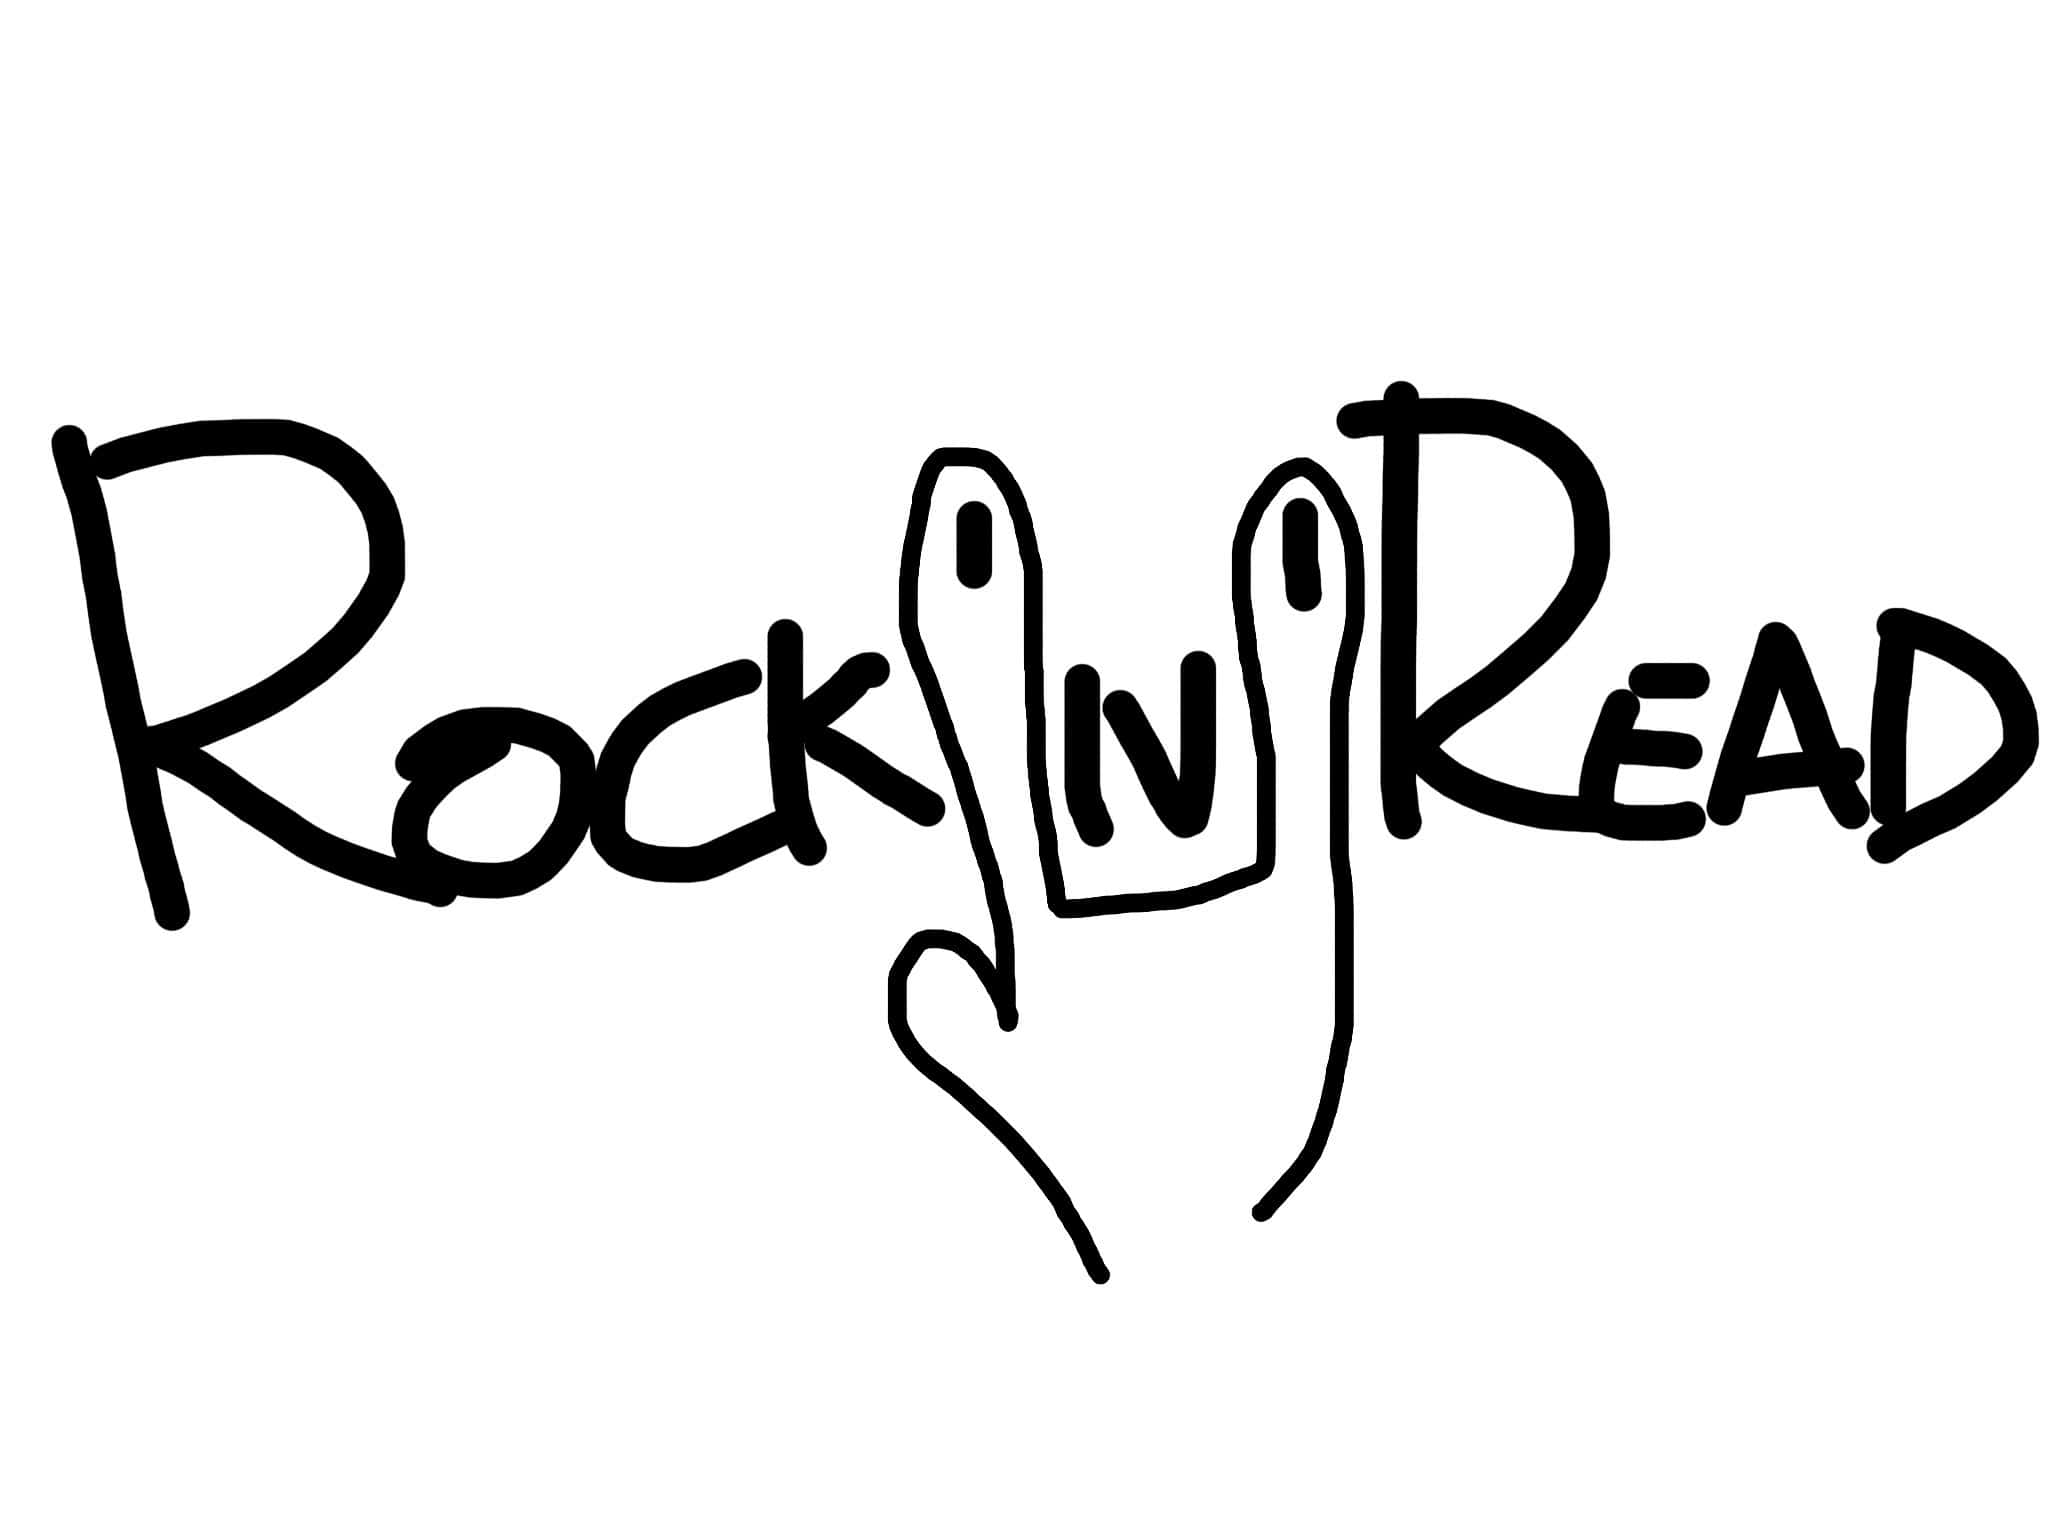 Rock’n’Read!